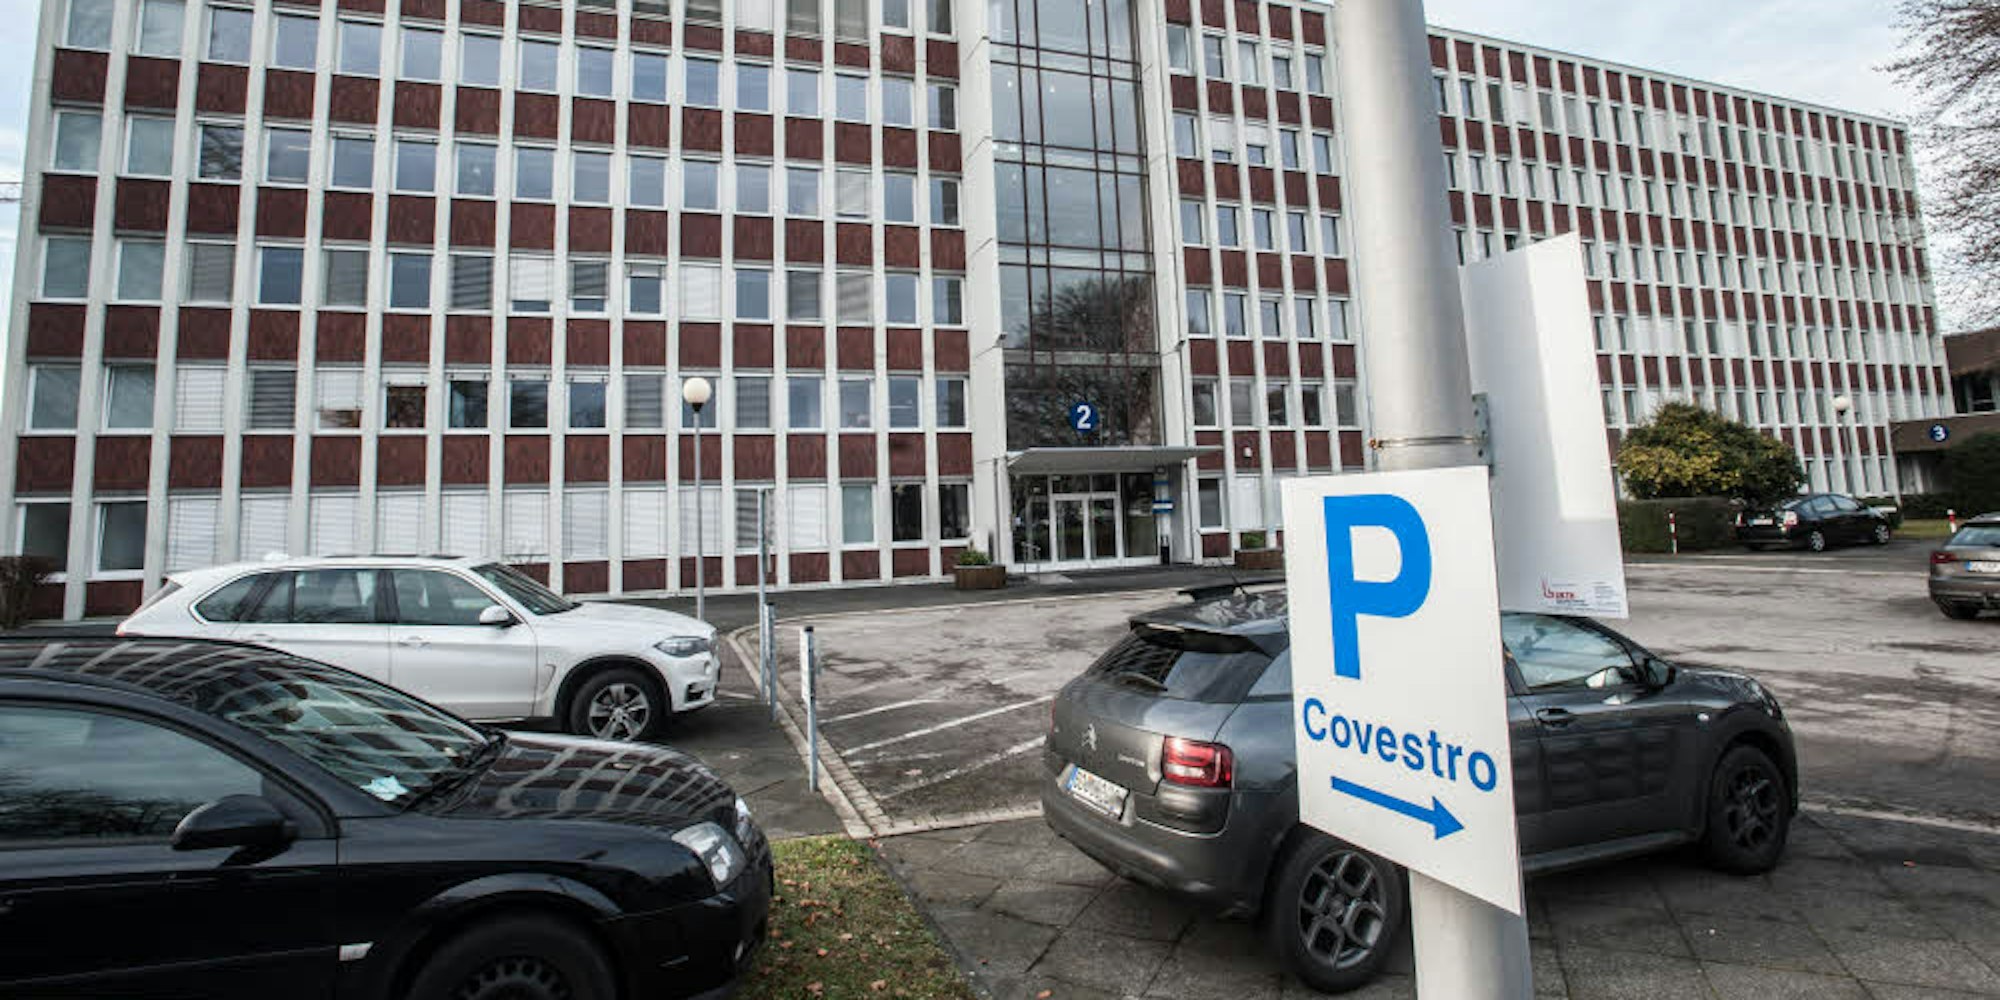 Auch keine schlechte Adresse: Die Spezialisten für Covestro-Patente arbeiten jetzt in Manfort, nicht mehr in Monheim.